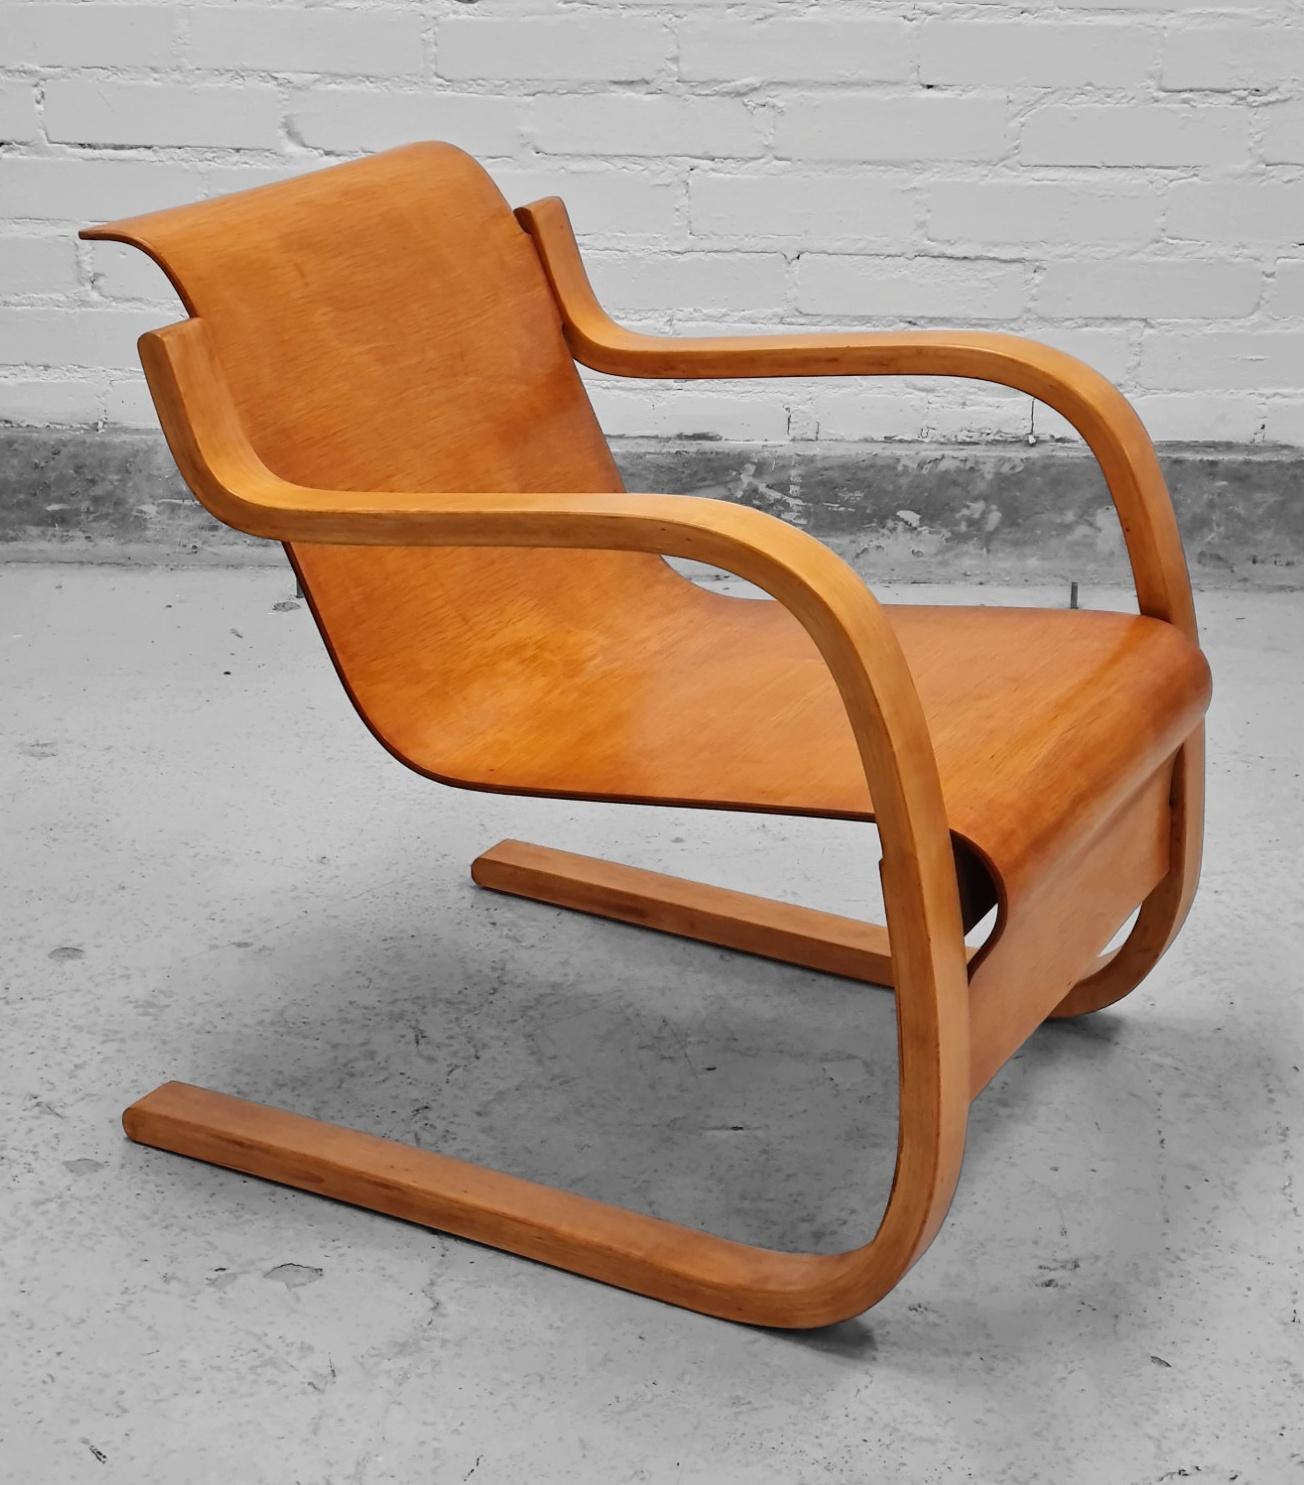 L'une des œuvres les plus emblématiques et les plus raffinées d'Alvar Aalto, la chaise modèle 42, également connue sous le nom de  chaise à ressort, `Pikku Paimio` ou Small Paimio en anglais. Il est considéré comme un chef-d'œuvre emblématique du